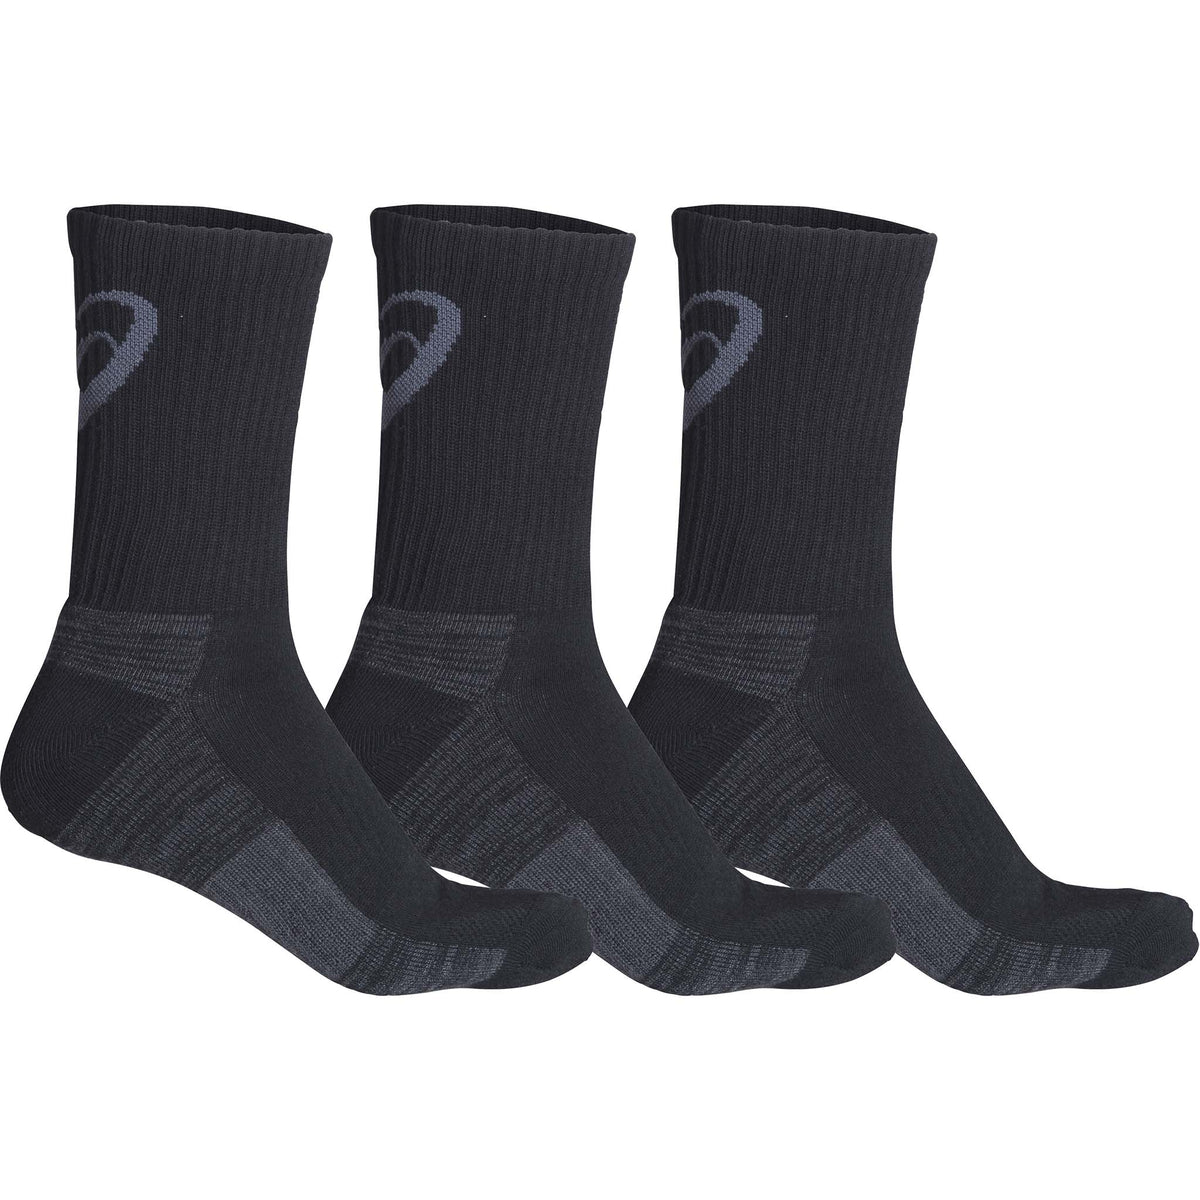 ASICS Training Crew Socks chaussettes de course a pied unisexes noir